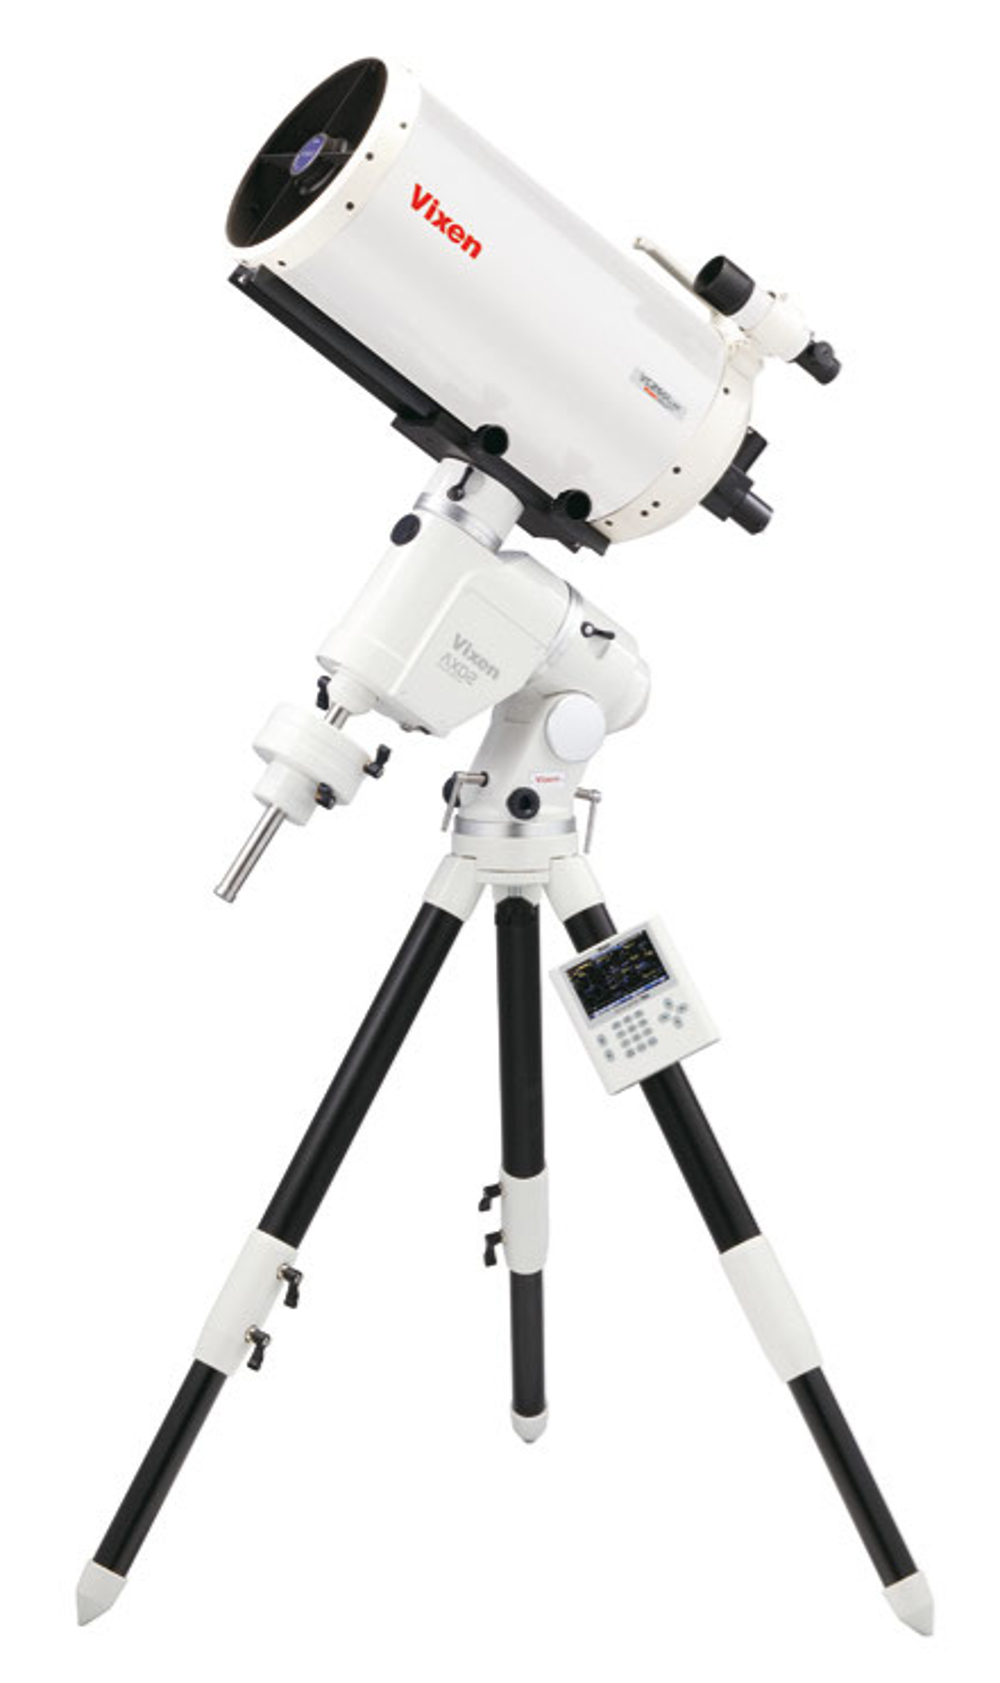 Montura Vixen AXD2 con telescopio VMC260L Maksutov-Cassegrain